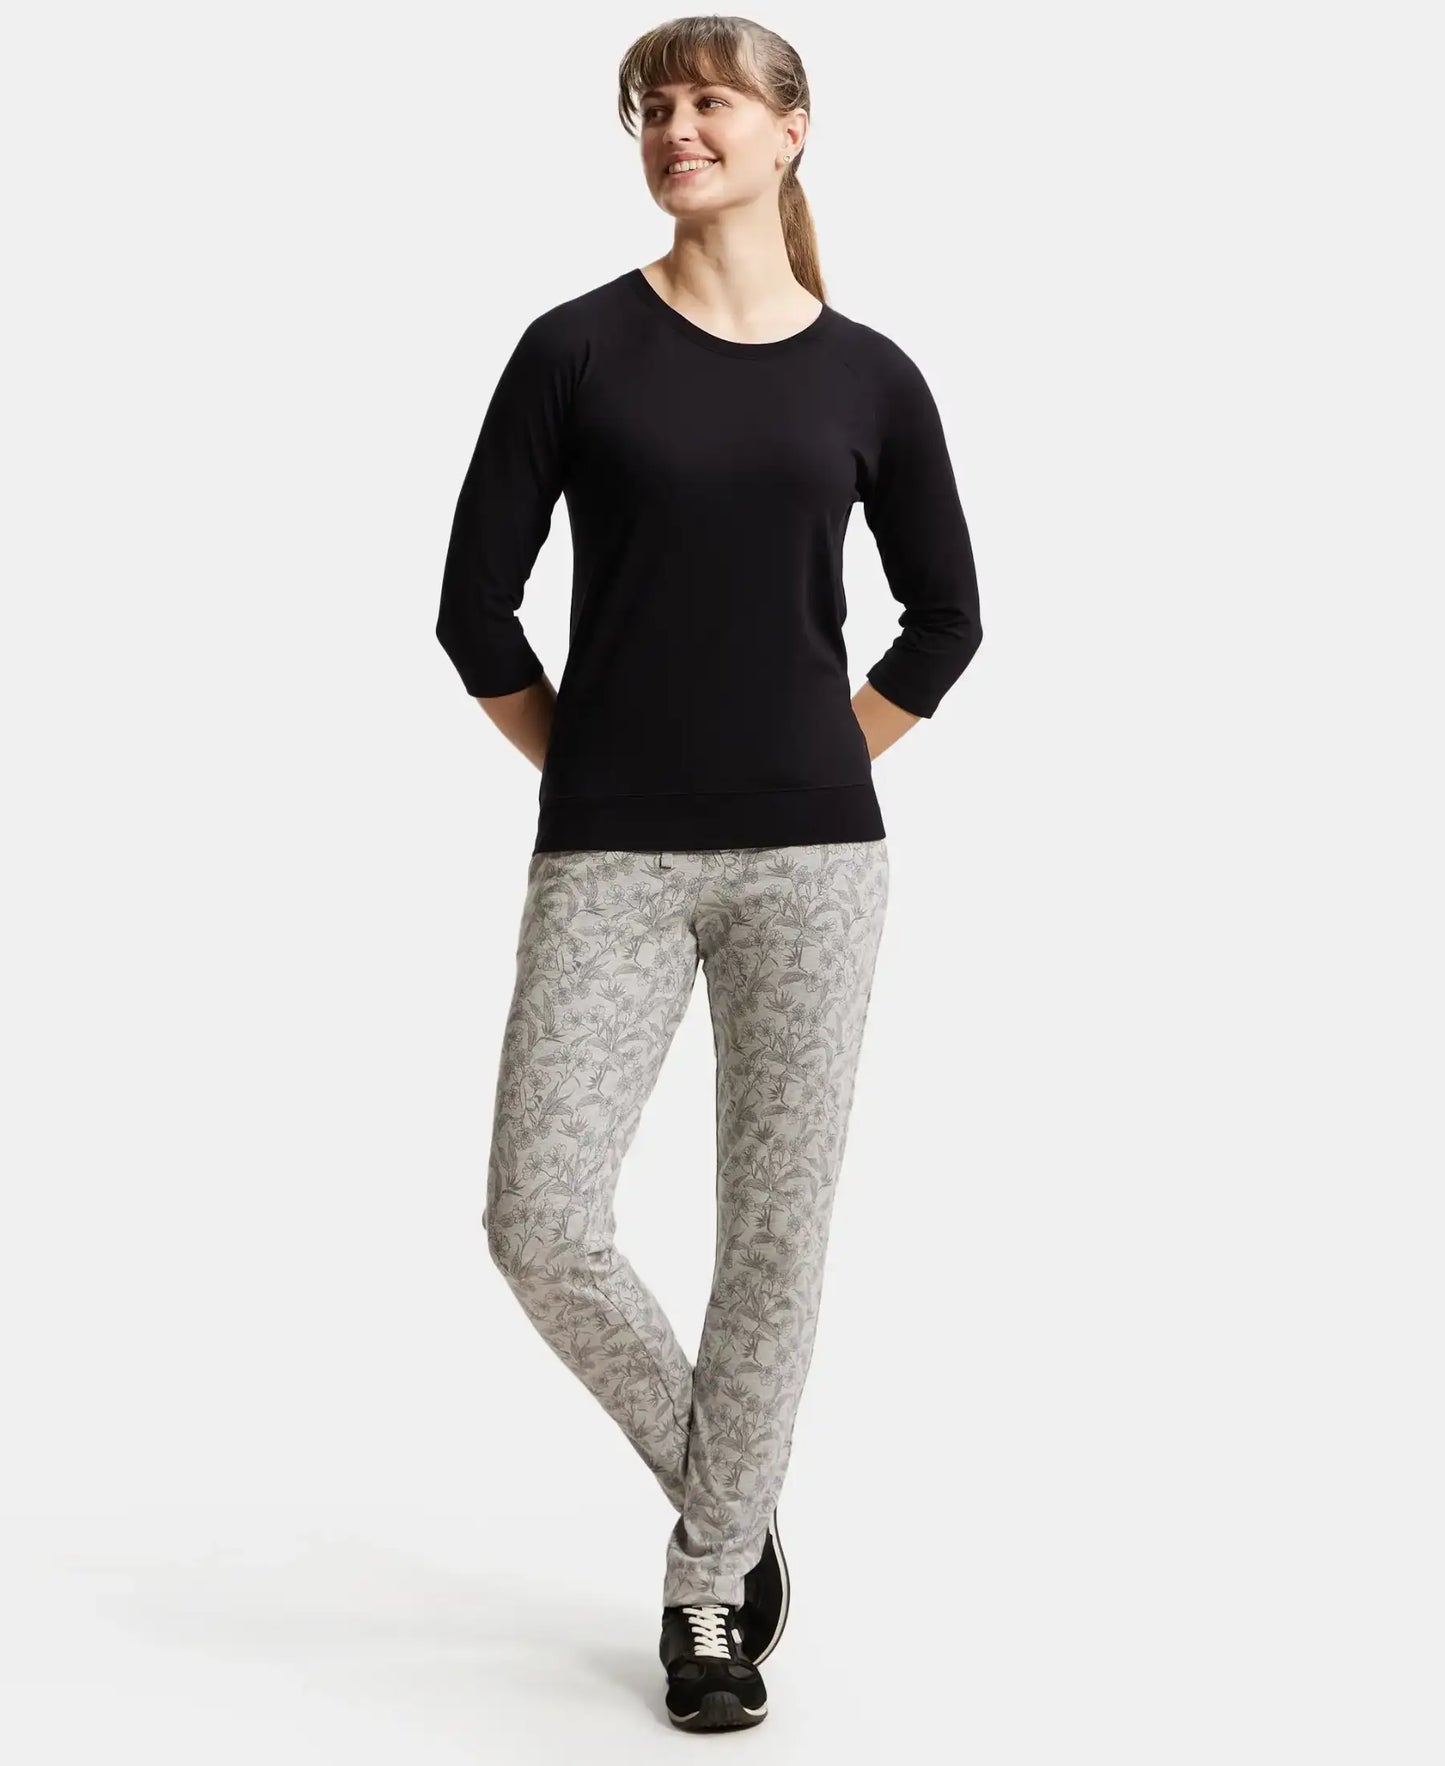 Super Combed Cotton Elastane Stretch Slim Fit Trackpants With Side Pockets - Lt Grey Melange Printed